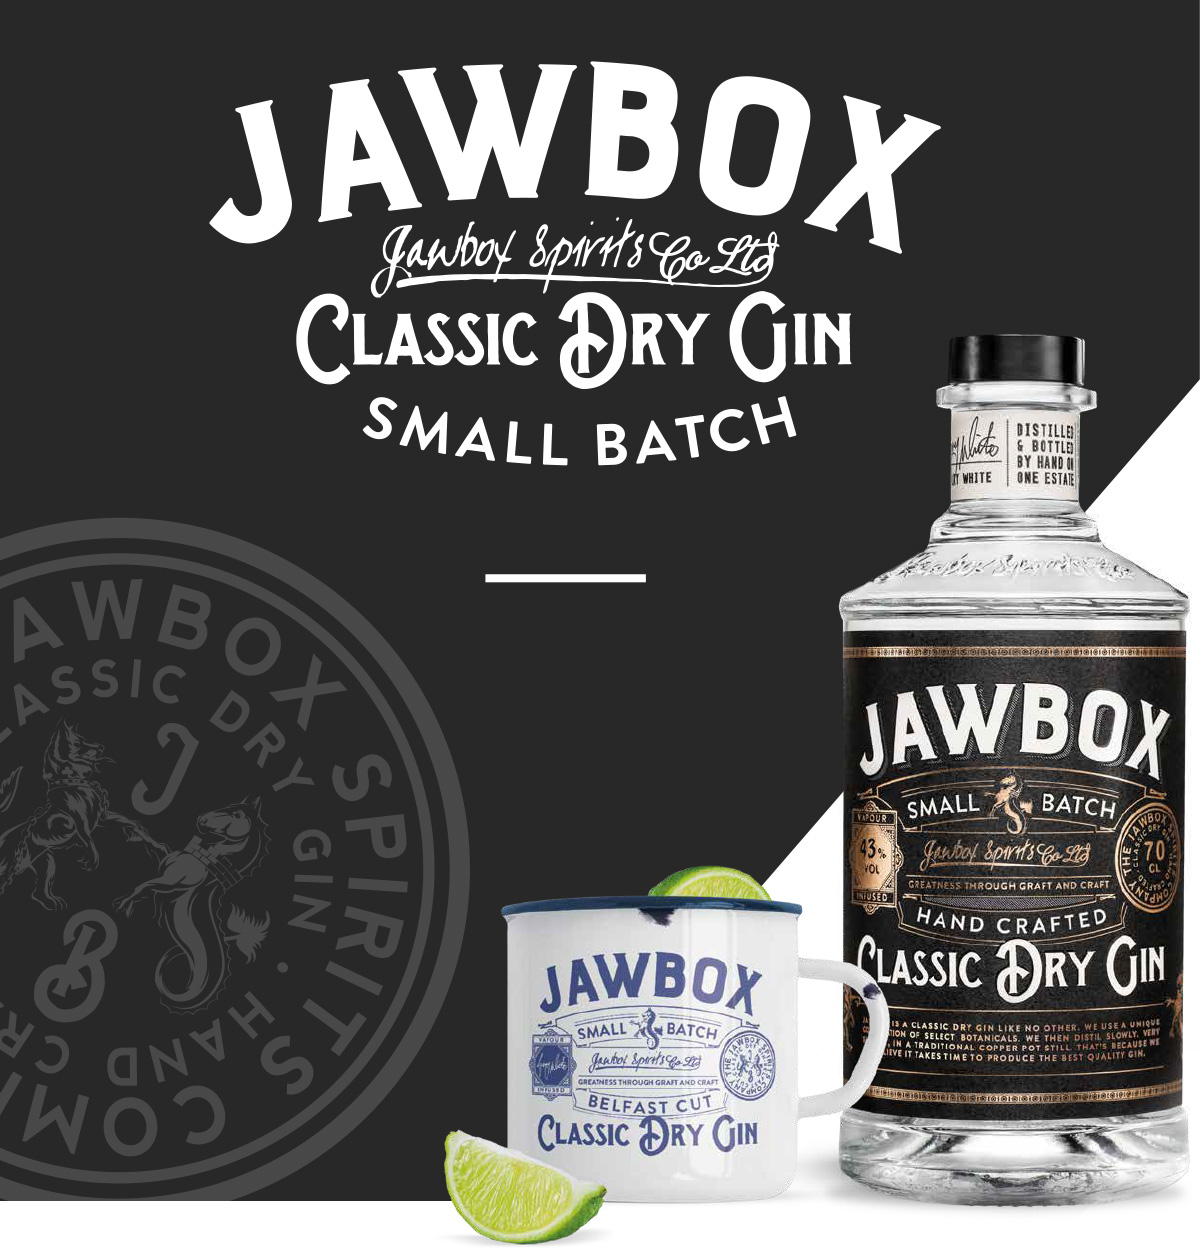 Jawbox Gin Small Batch